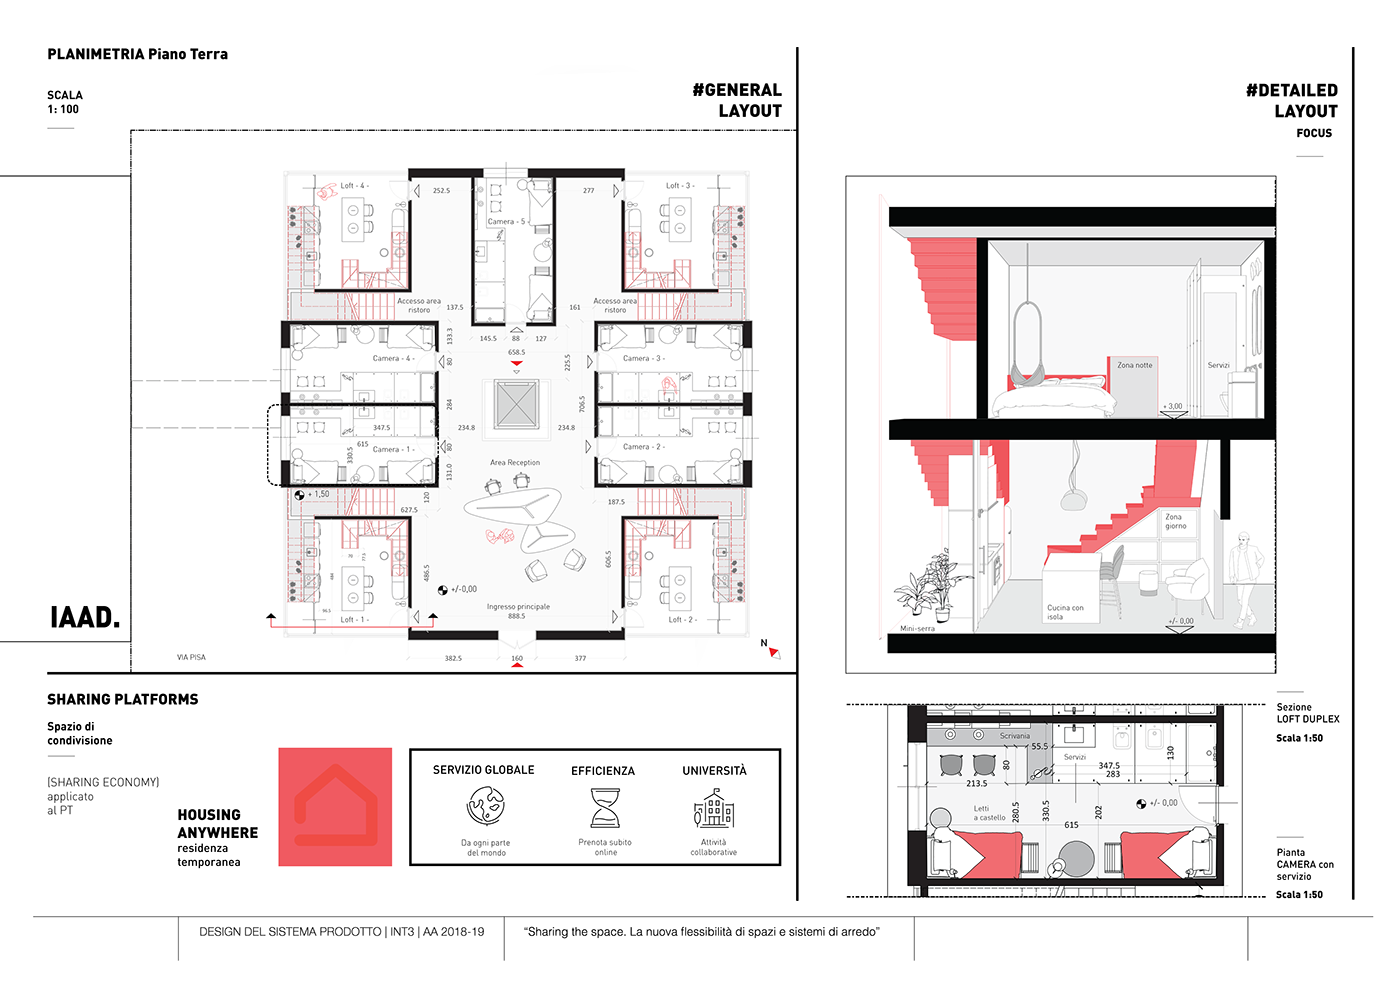 Le Corbusier architecture module razional Project interior design  system modern ILLUSTRATION  cube